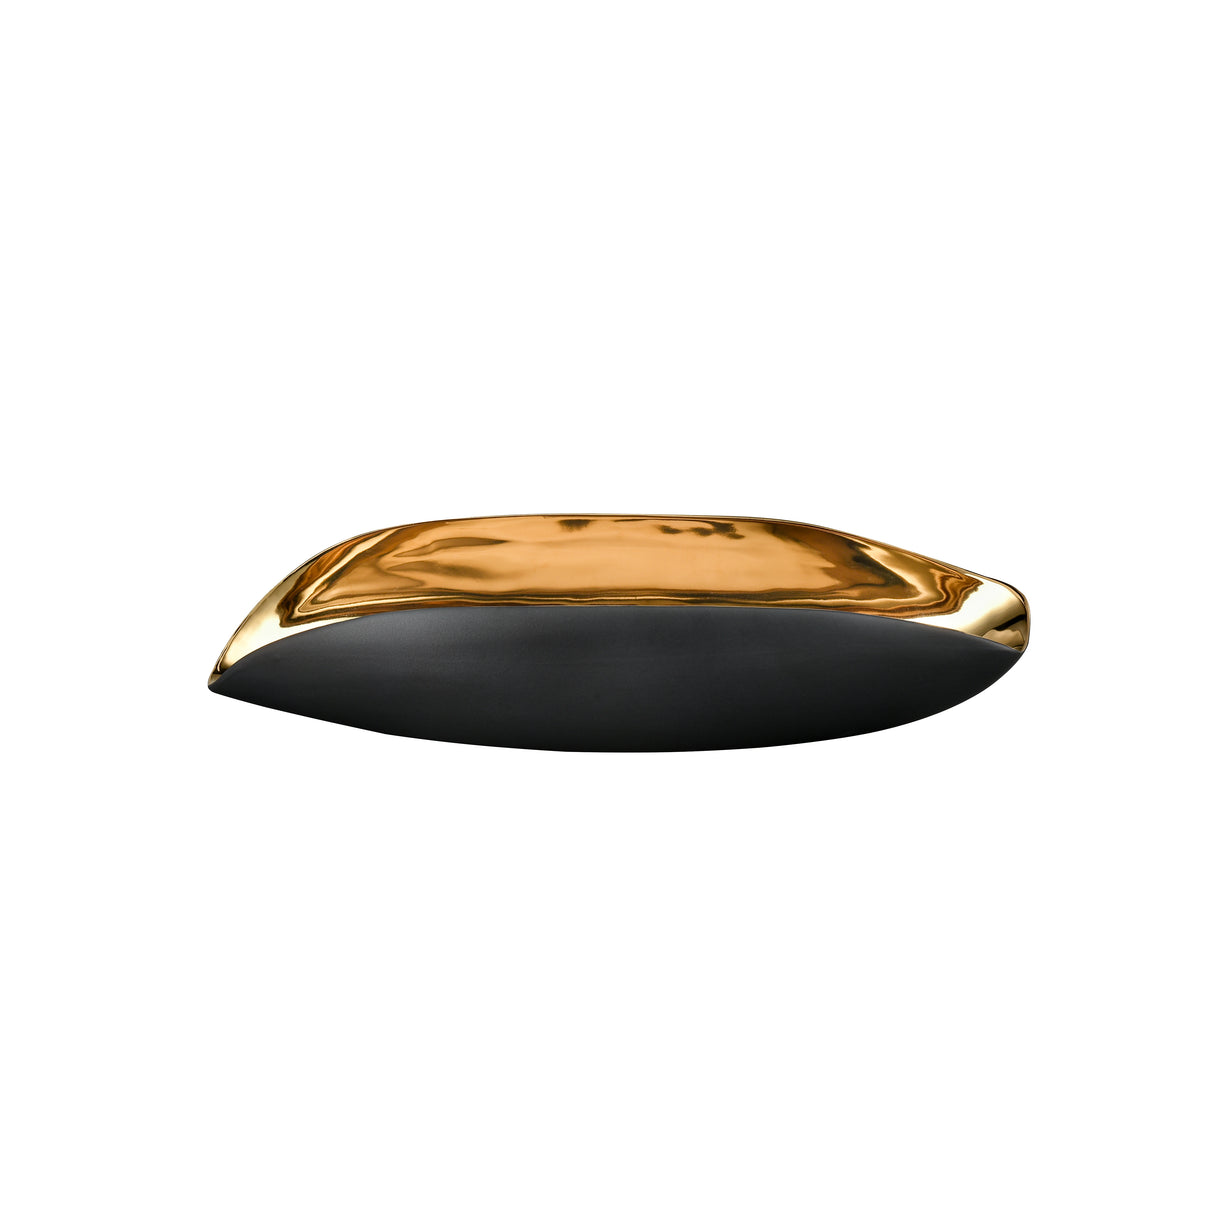 Elk H0017-9757 Greer Vessel - Black and Gold Glazed